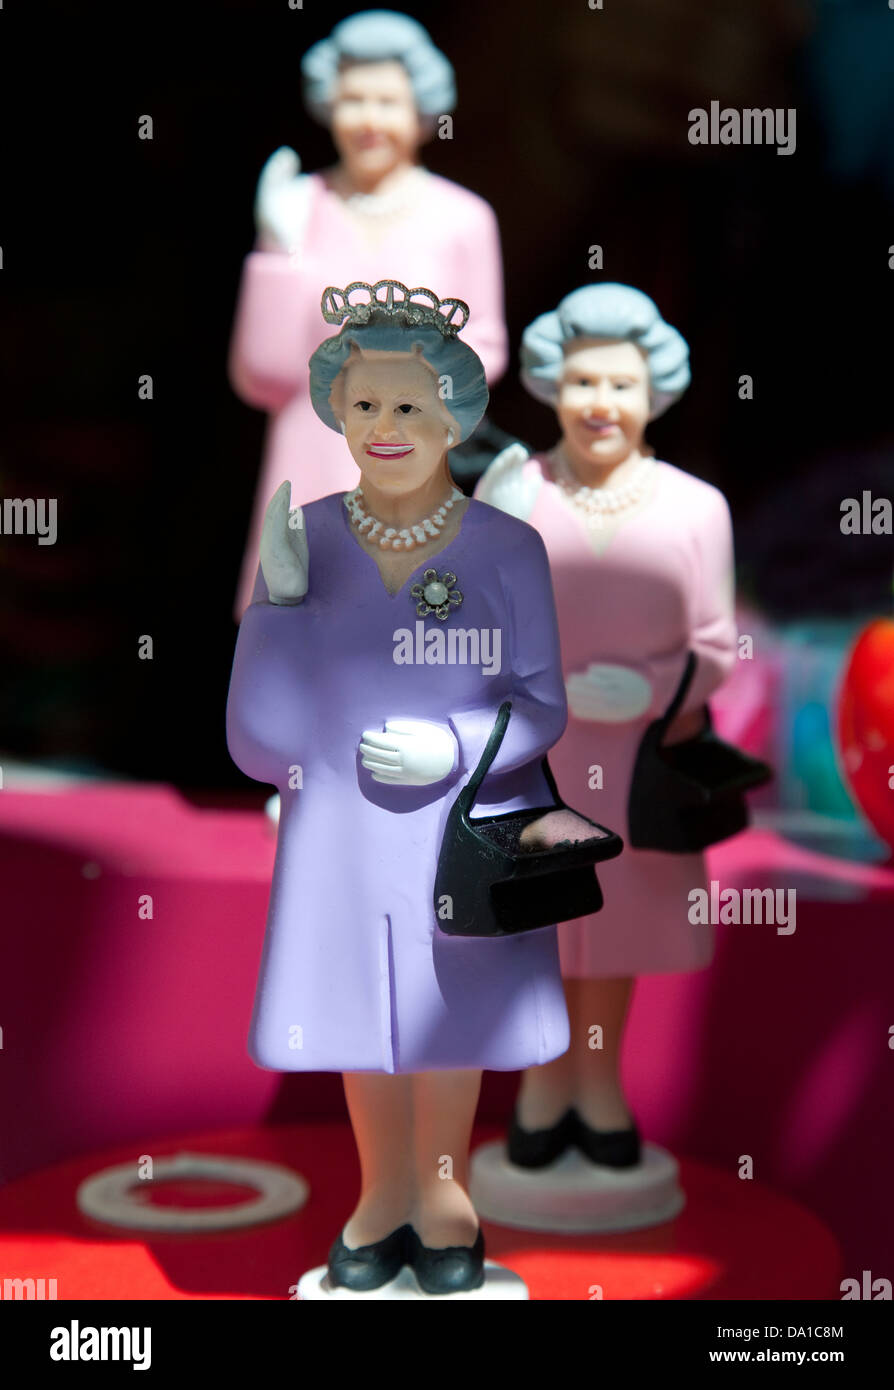 Animated waving figures of Queen Elizabeth II in London shop display Stock Photo